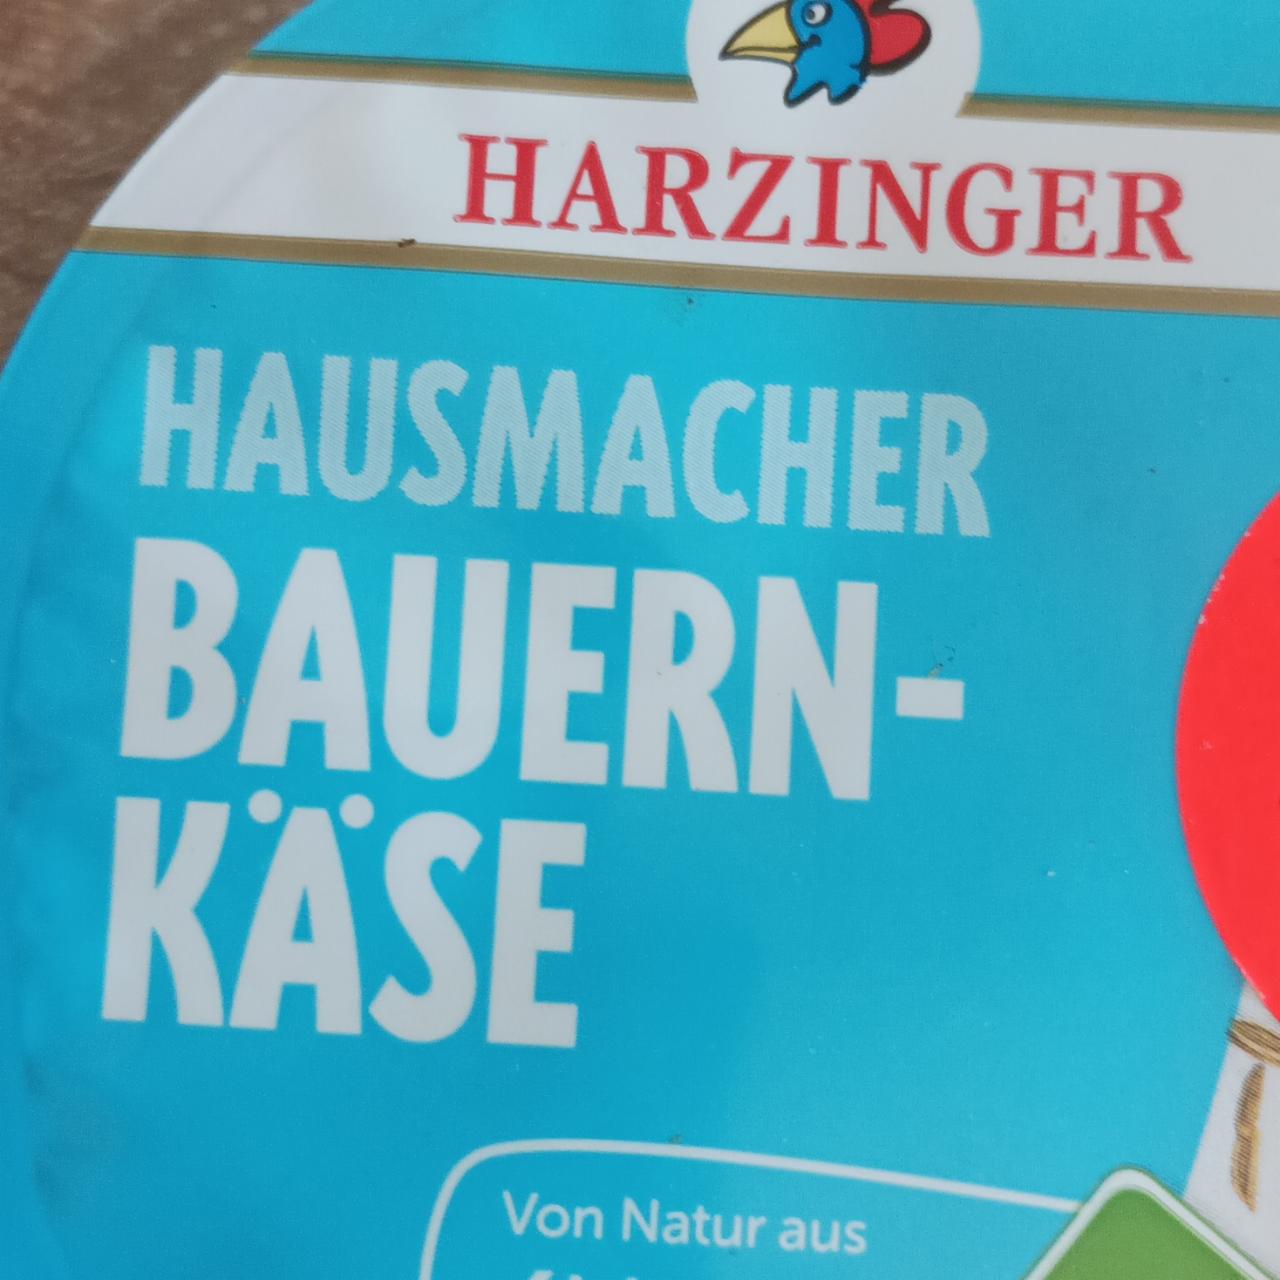 Фото - Bauern-kase Harzinger